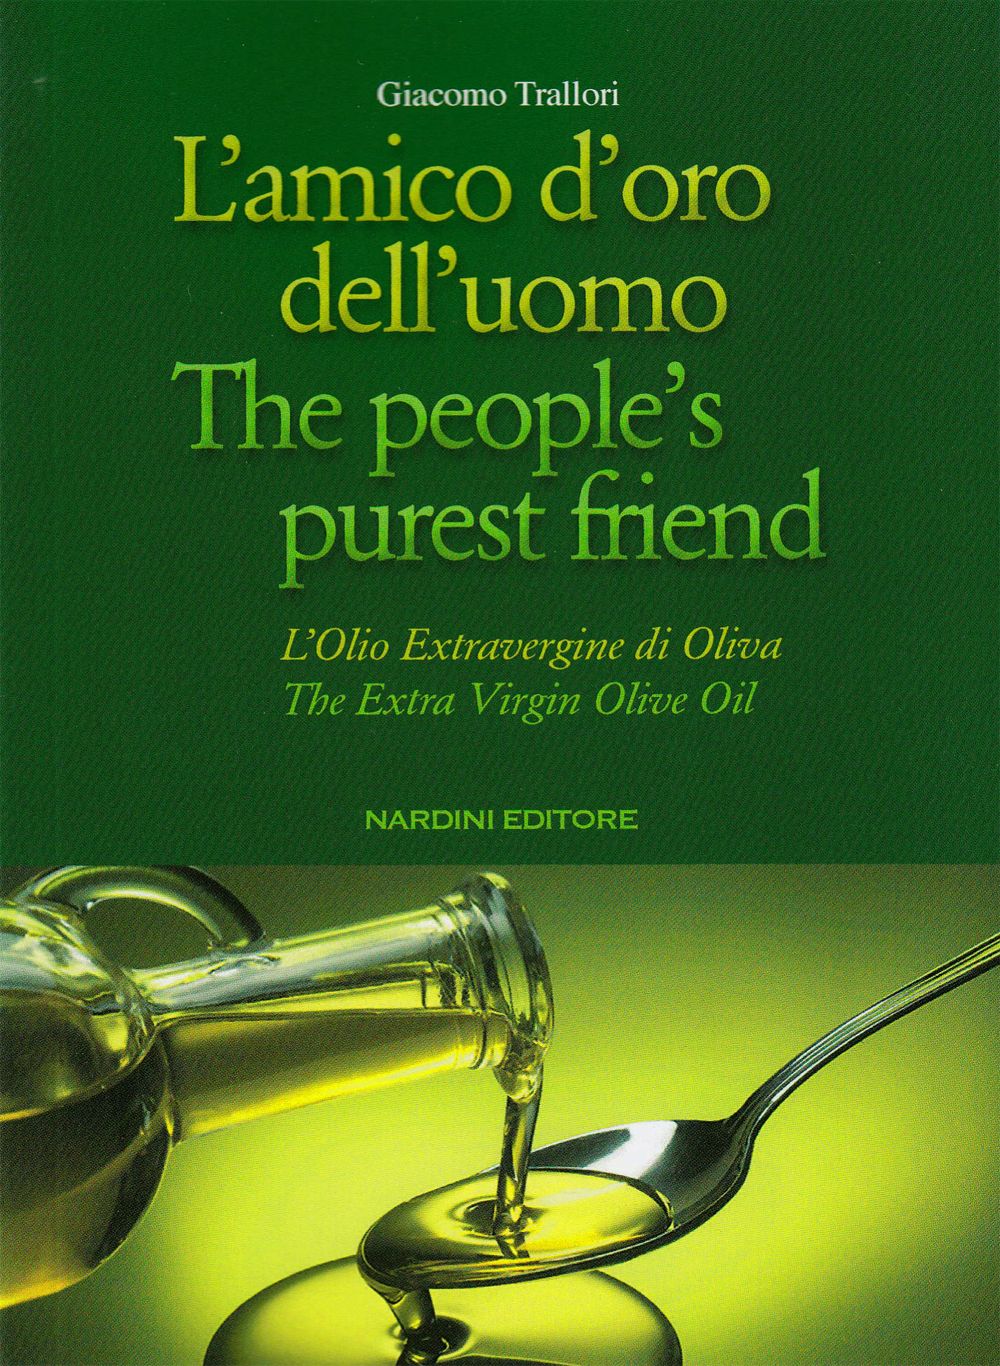 olio extra vergine di oliva The extra virgin olive oil